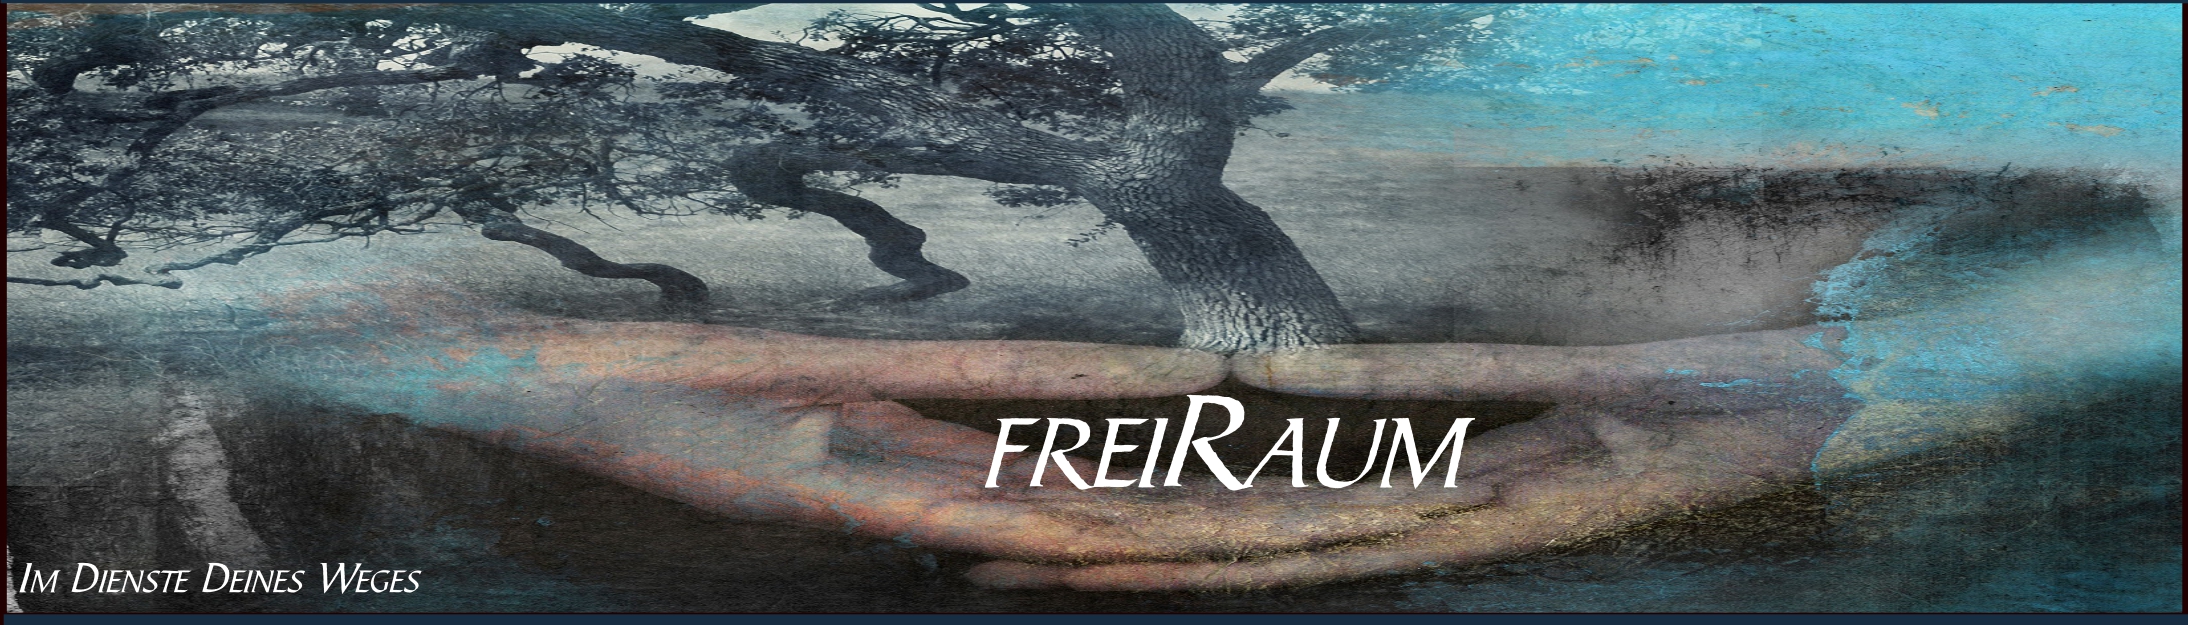 freiRaum2-Banner-Baum-in-der-Hand